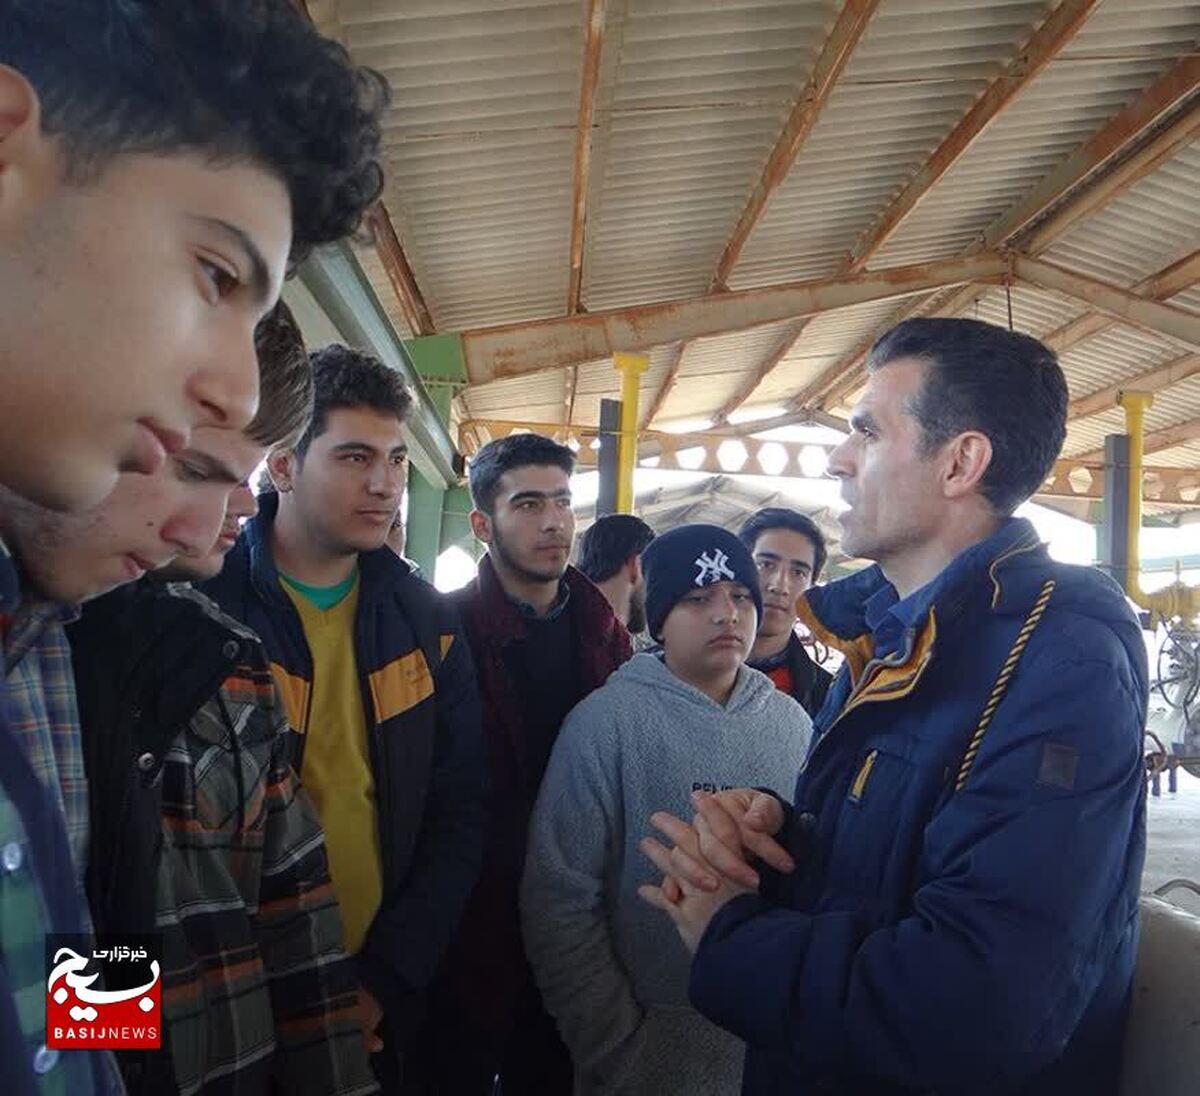  

برگزاری نهمین اردوی راهیان پیشرفت با حضور ۱۸۰ دانش آموز در شهرستان آبیک